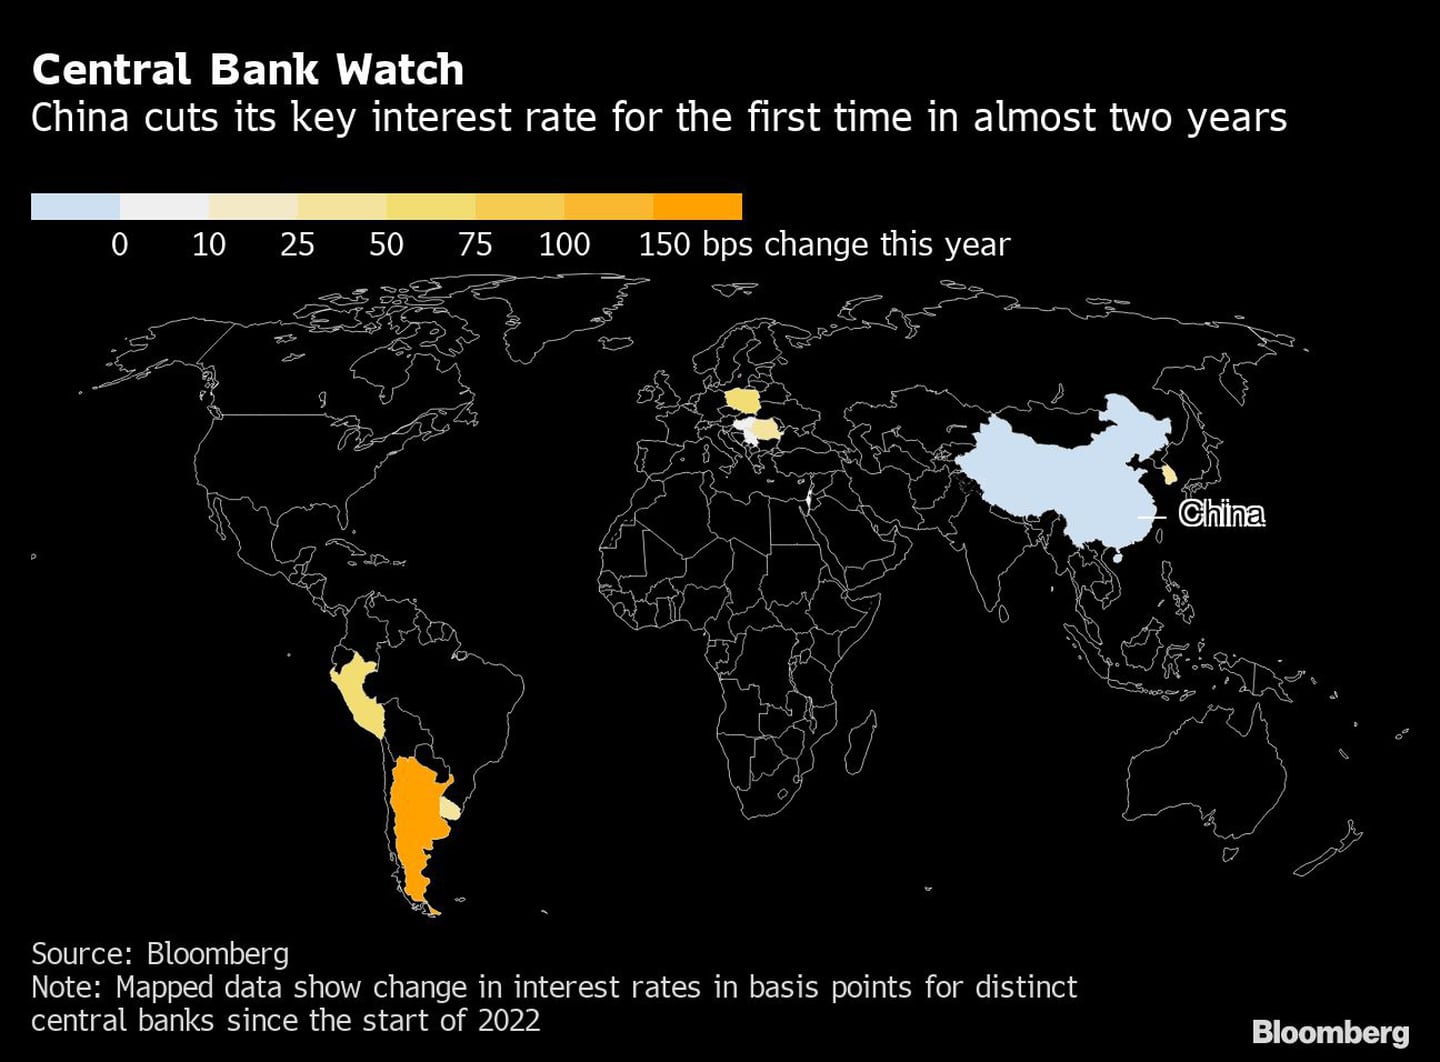 El mapa muestra cambios de tasas de interés por parte de los bancos centrales desde el comienzo de 2022.dfd